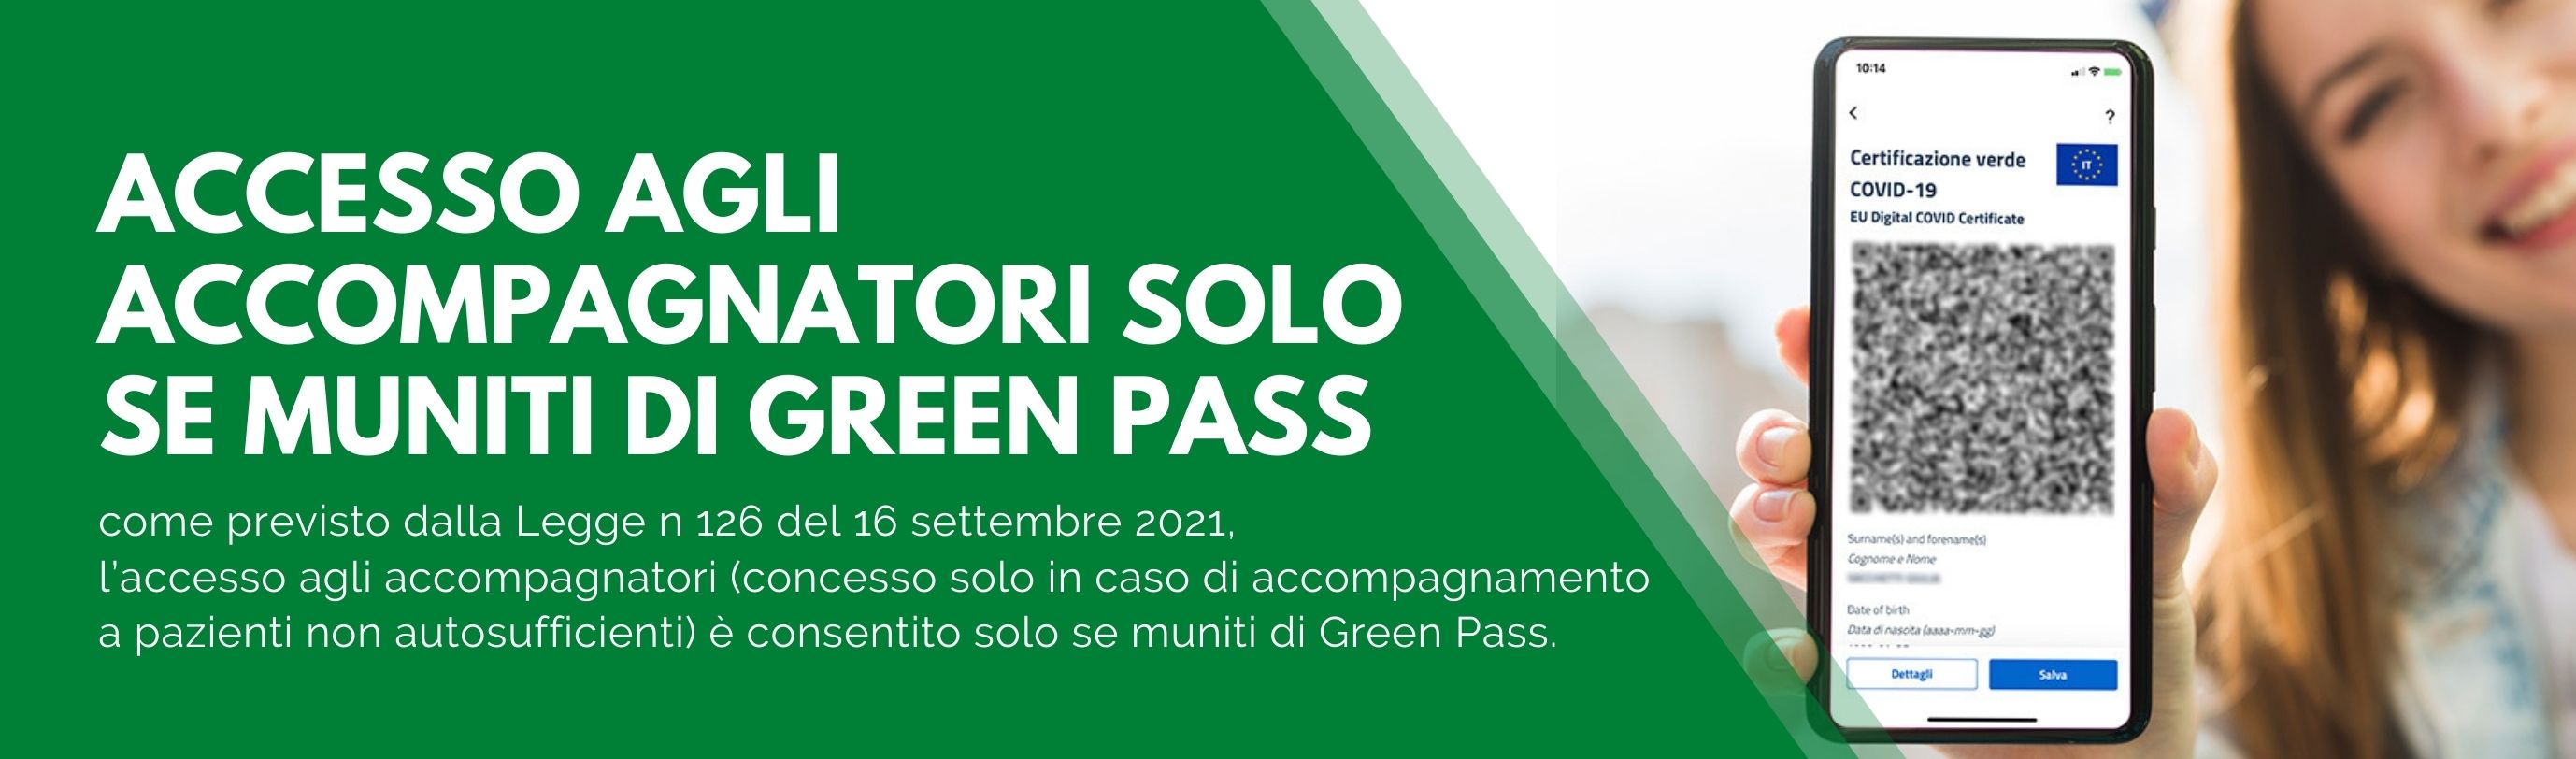 green pass 3